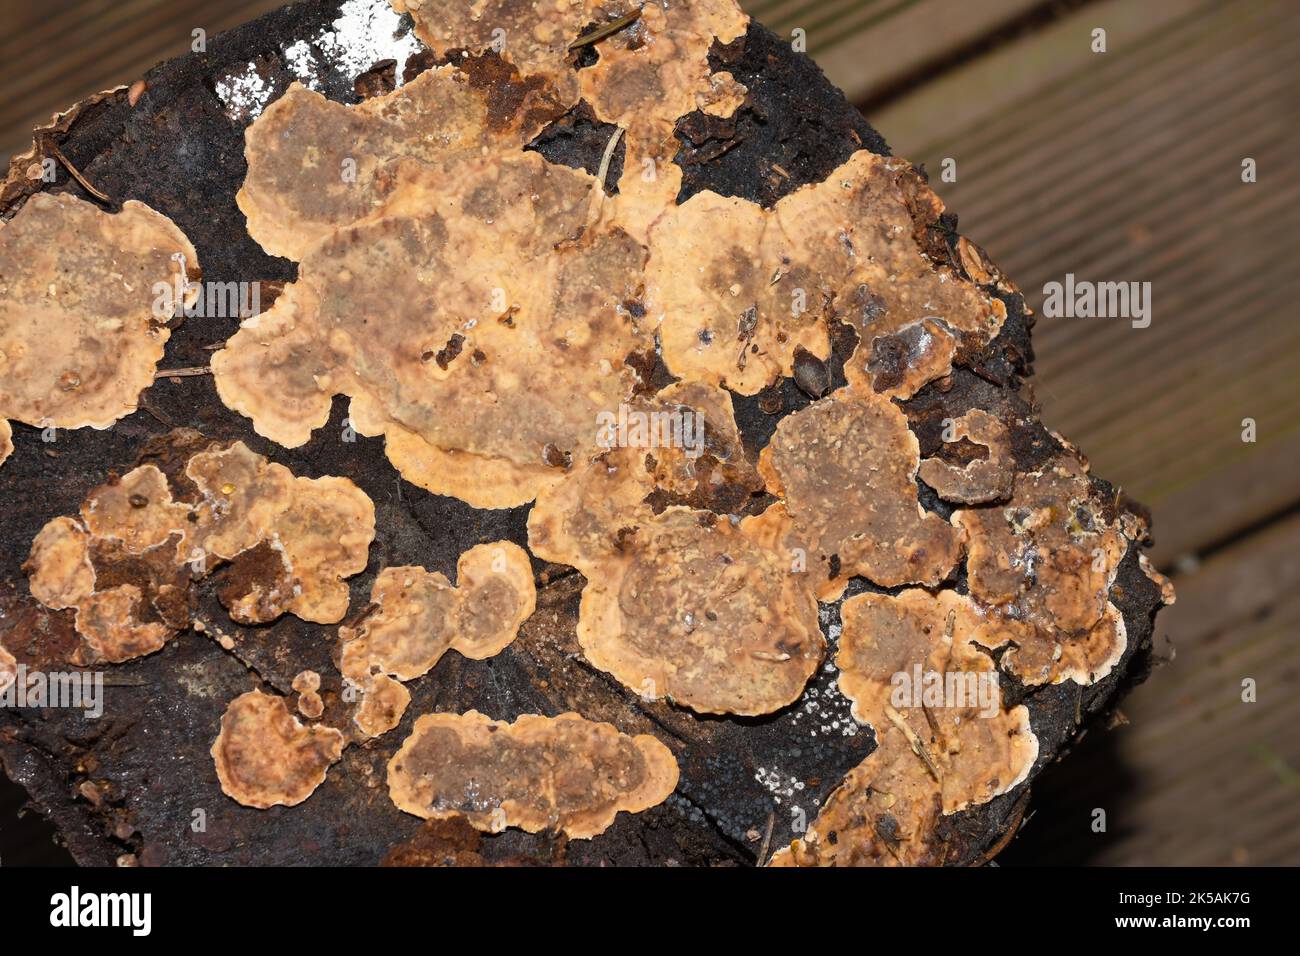 Blutende Laubkruste Stereum rugosum Pilz wächst auf einem Baumstumpf Stockfoto